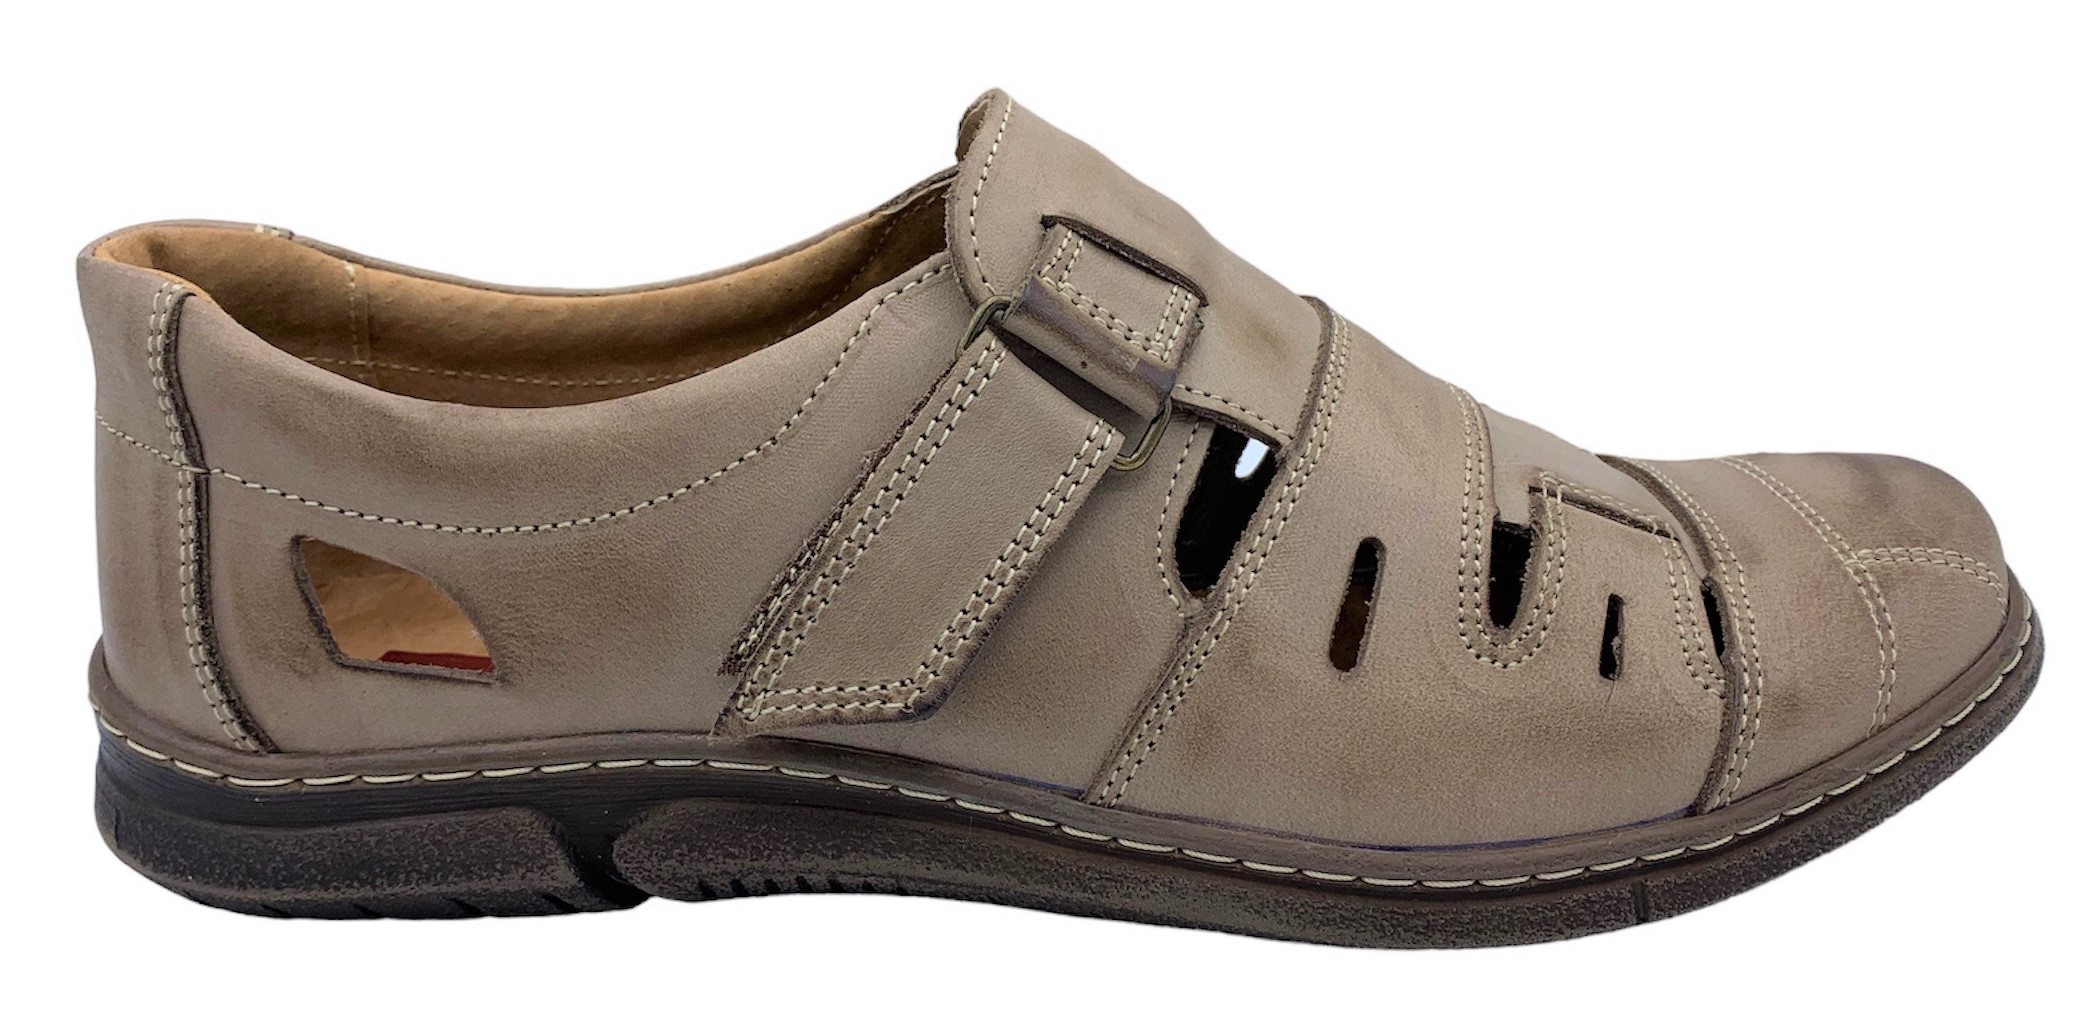 Pánská kožené sandále NES 4617 hnědé Velikost: 44 (EU)